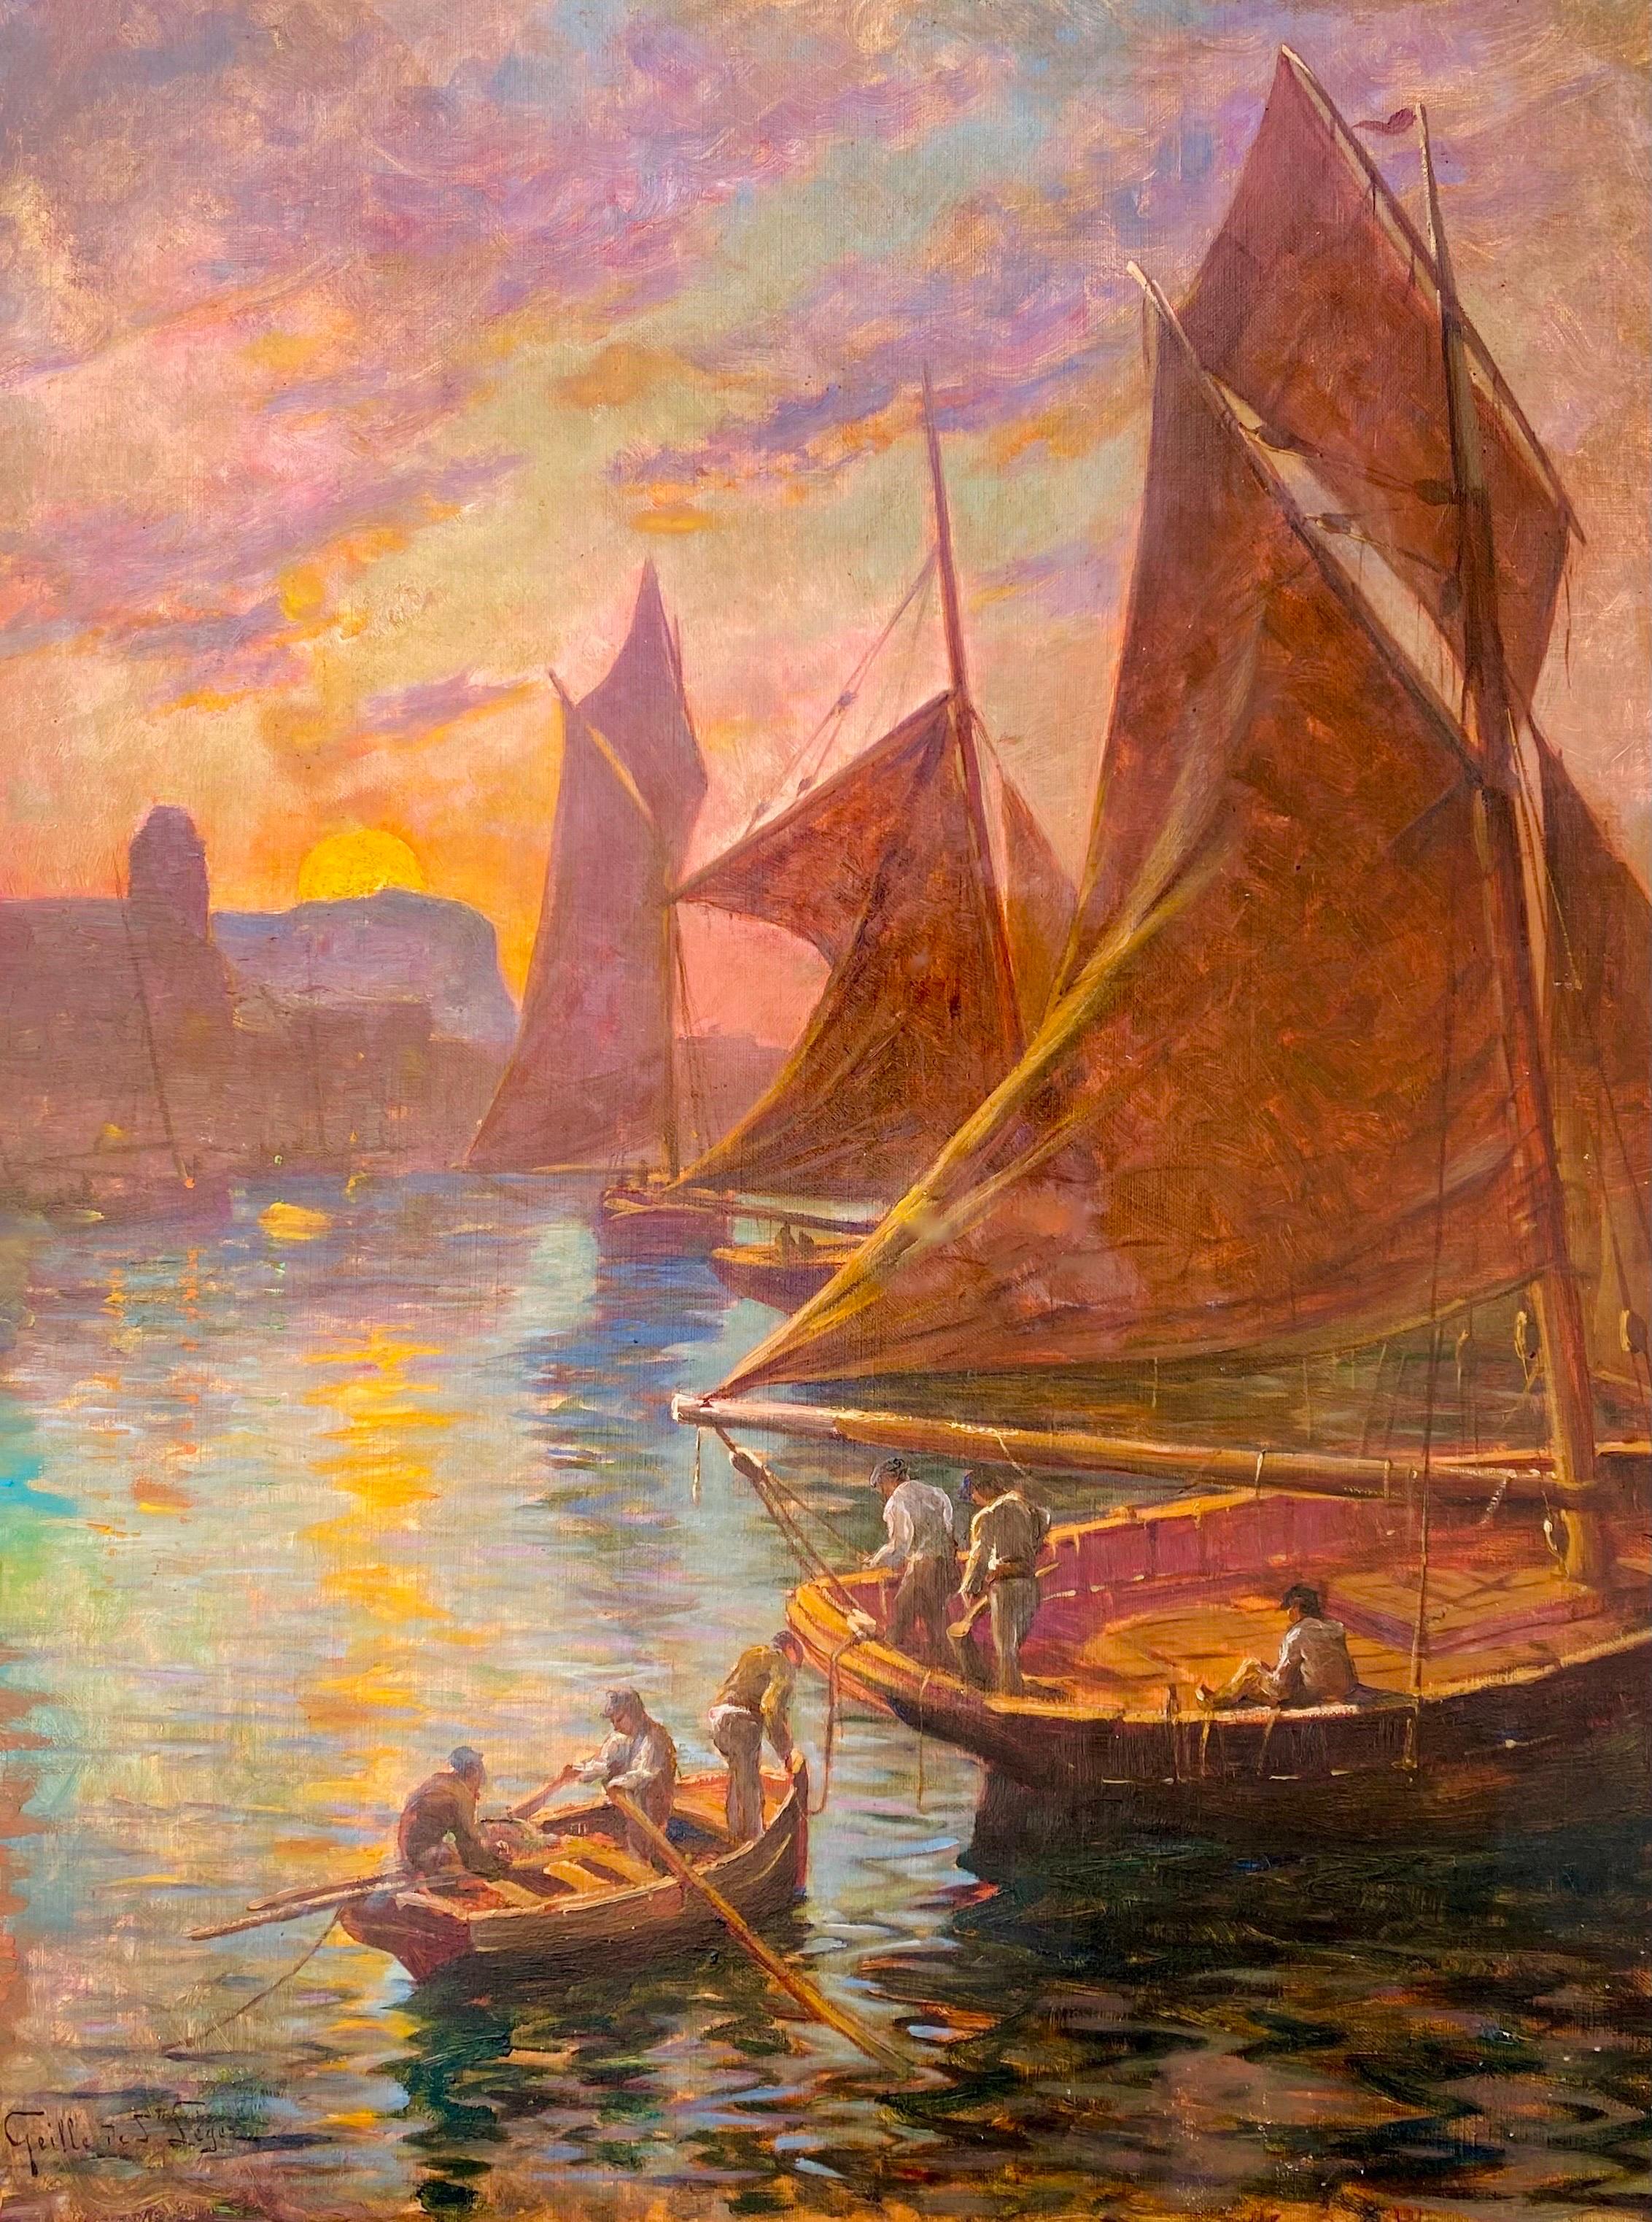 Peinture impressionniste française du XIXe siècle représentant la Méditerranée - Voiliers - Port de voile - Painting de Léon Geille de Saint-Léger